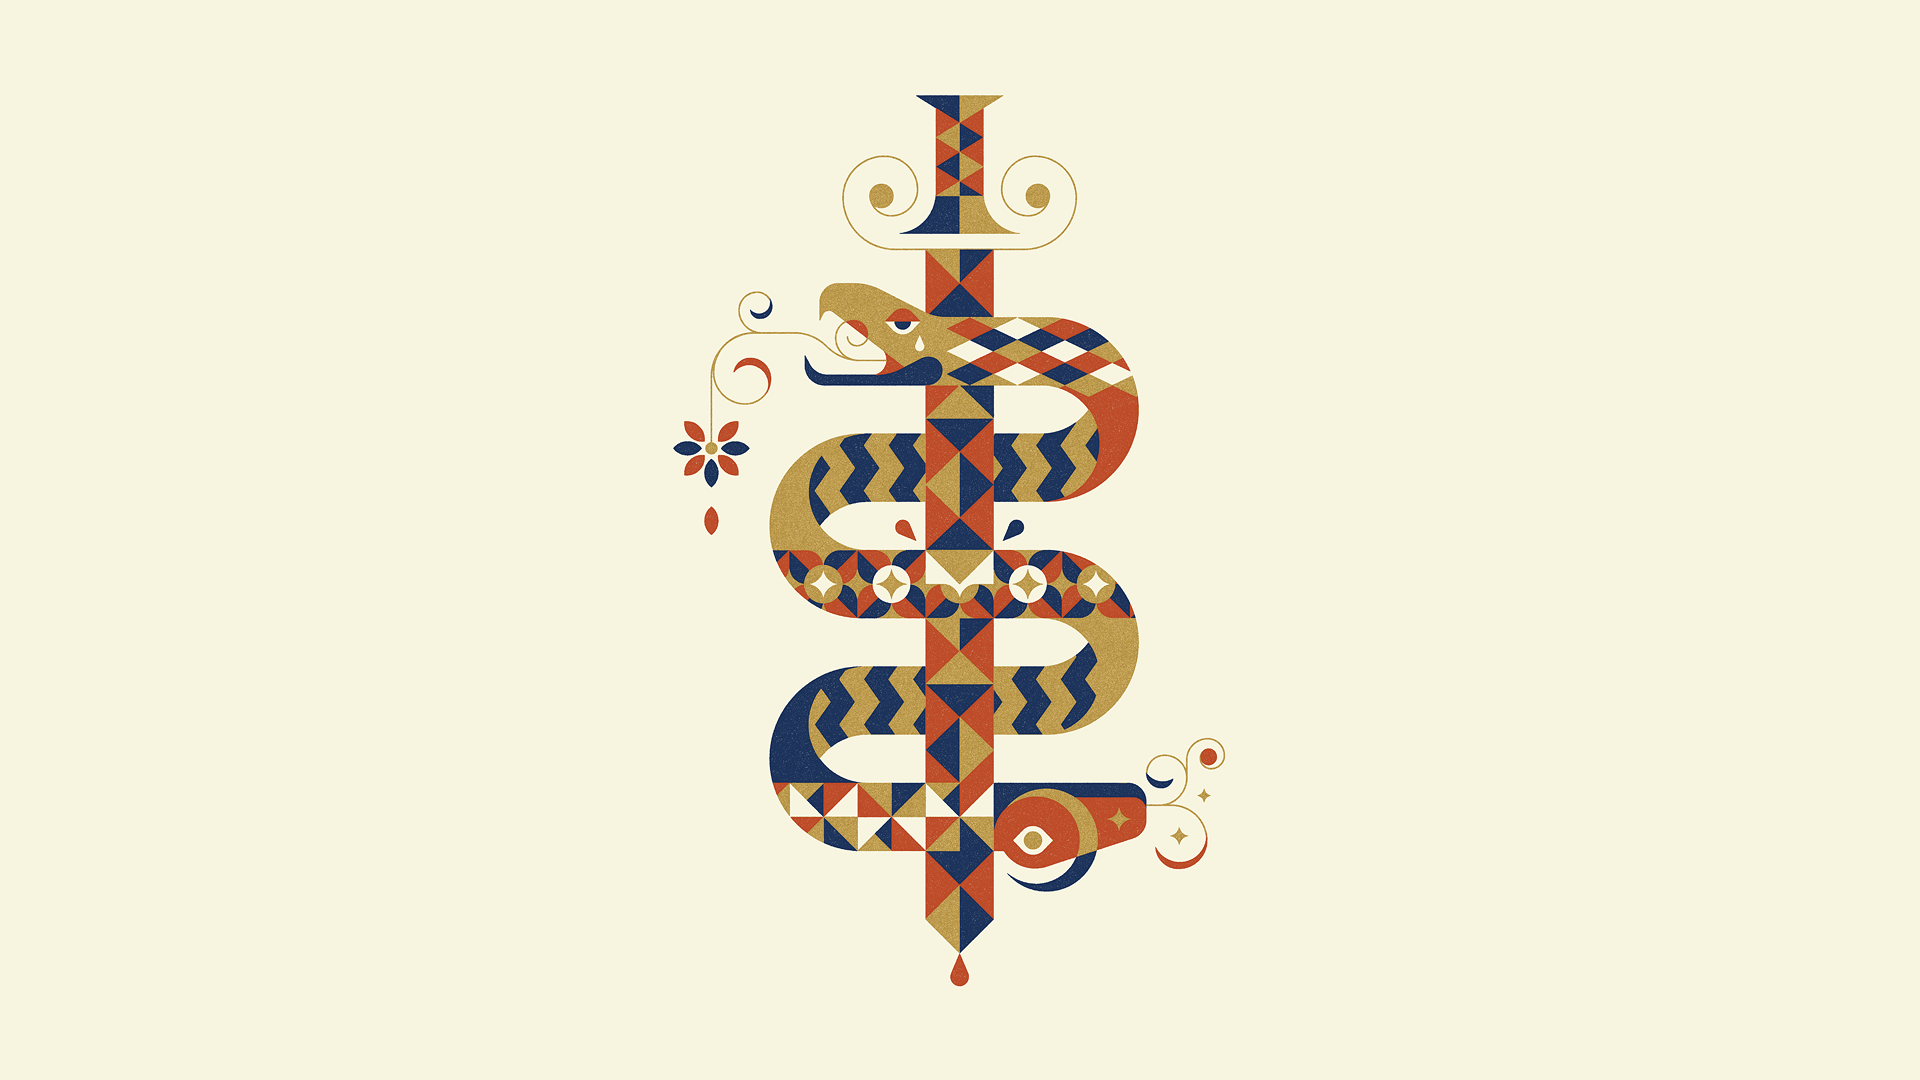 Snake Circle Logo - Wallpaper : illustration, minimalism, text, logo, snake, sword